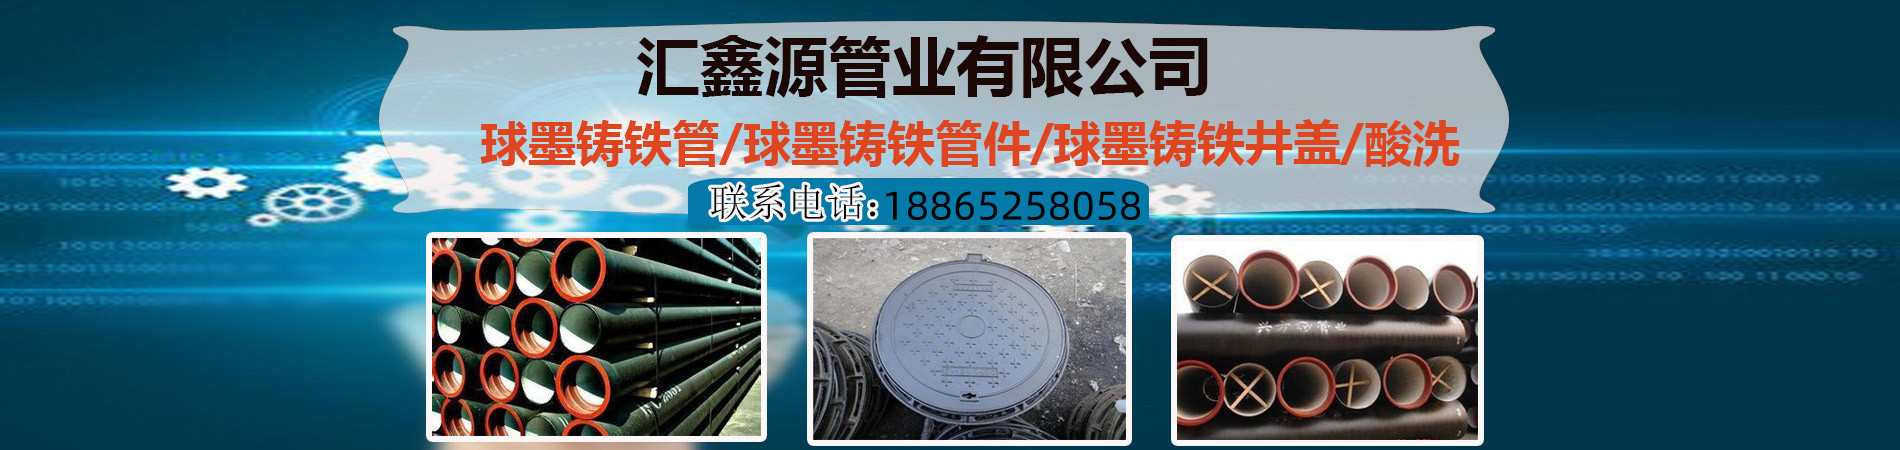 D400重型方井盖、徐州本地D400重型方井盖、徐州、徐州D400重型方井盖